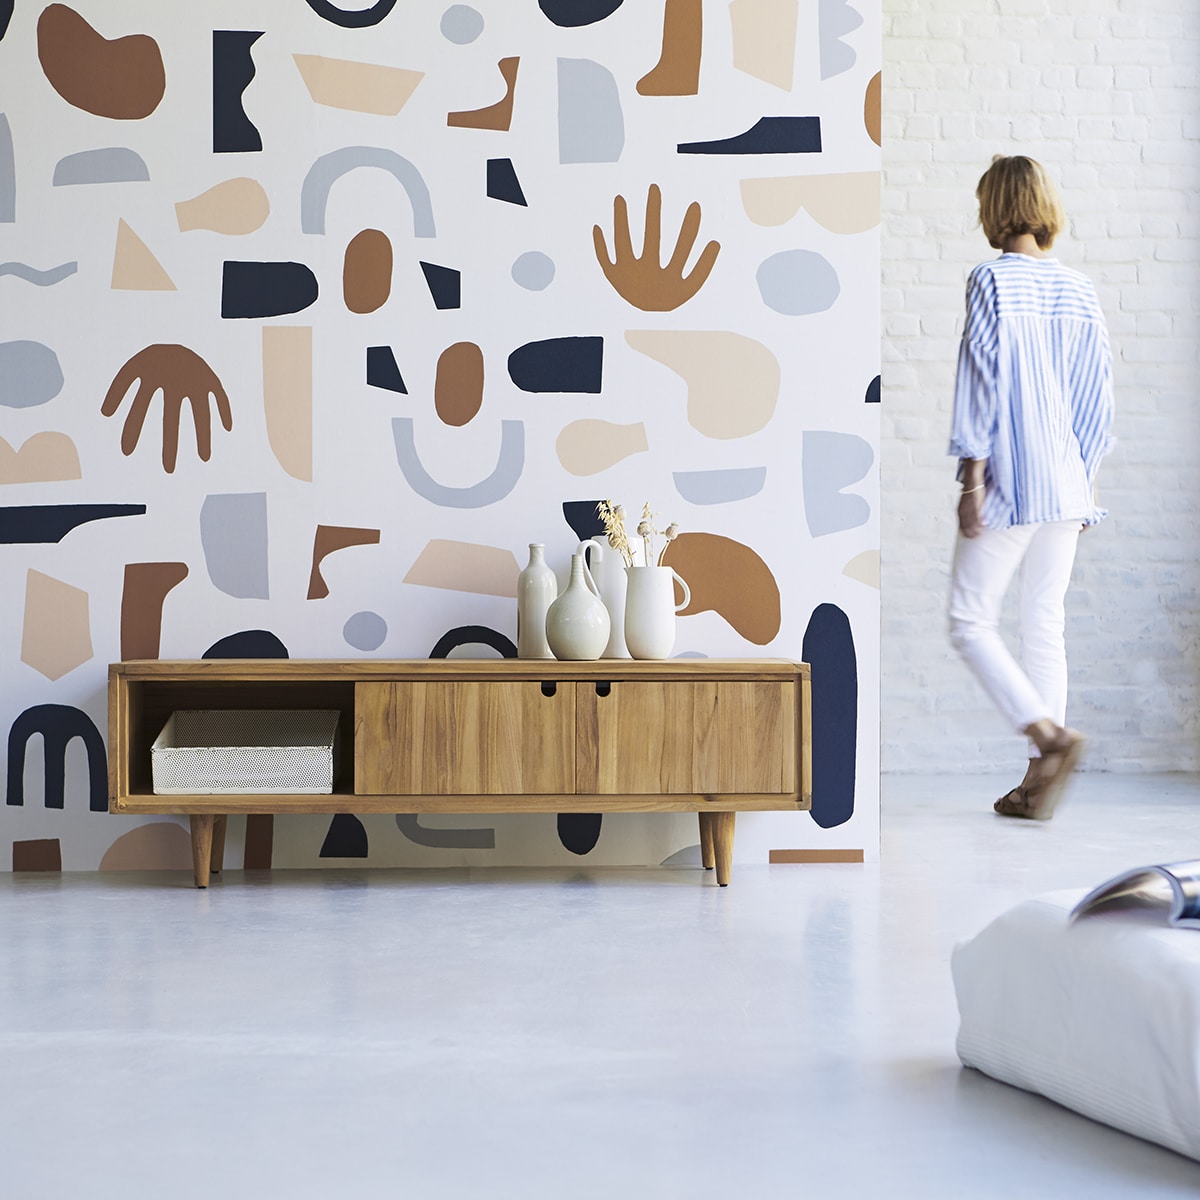 Lire la suite à propos de l’article « Mural Wallpaper » : Le papier peint, un retour en touche